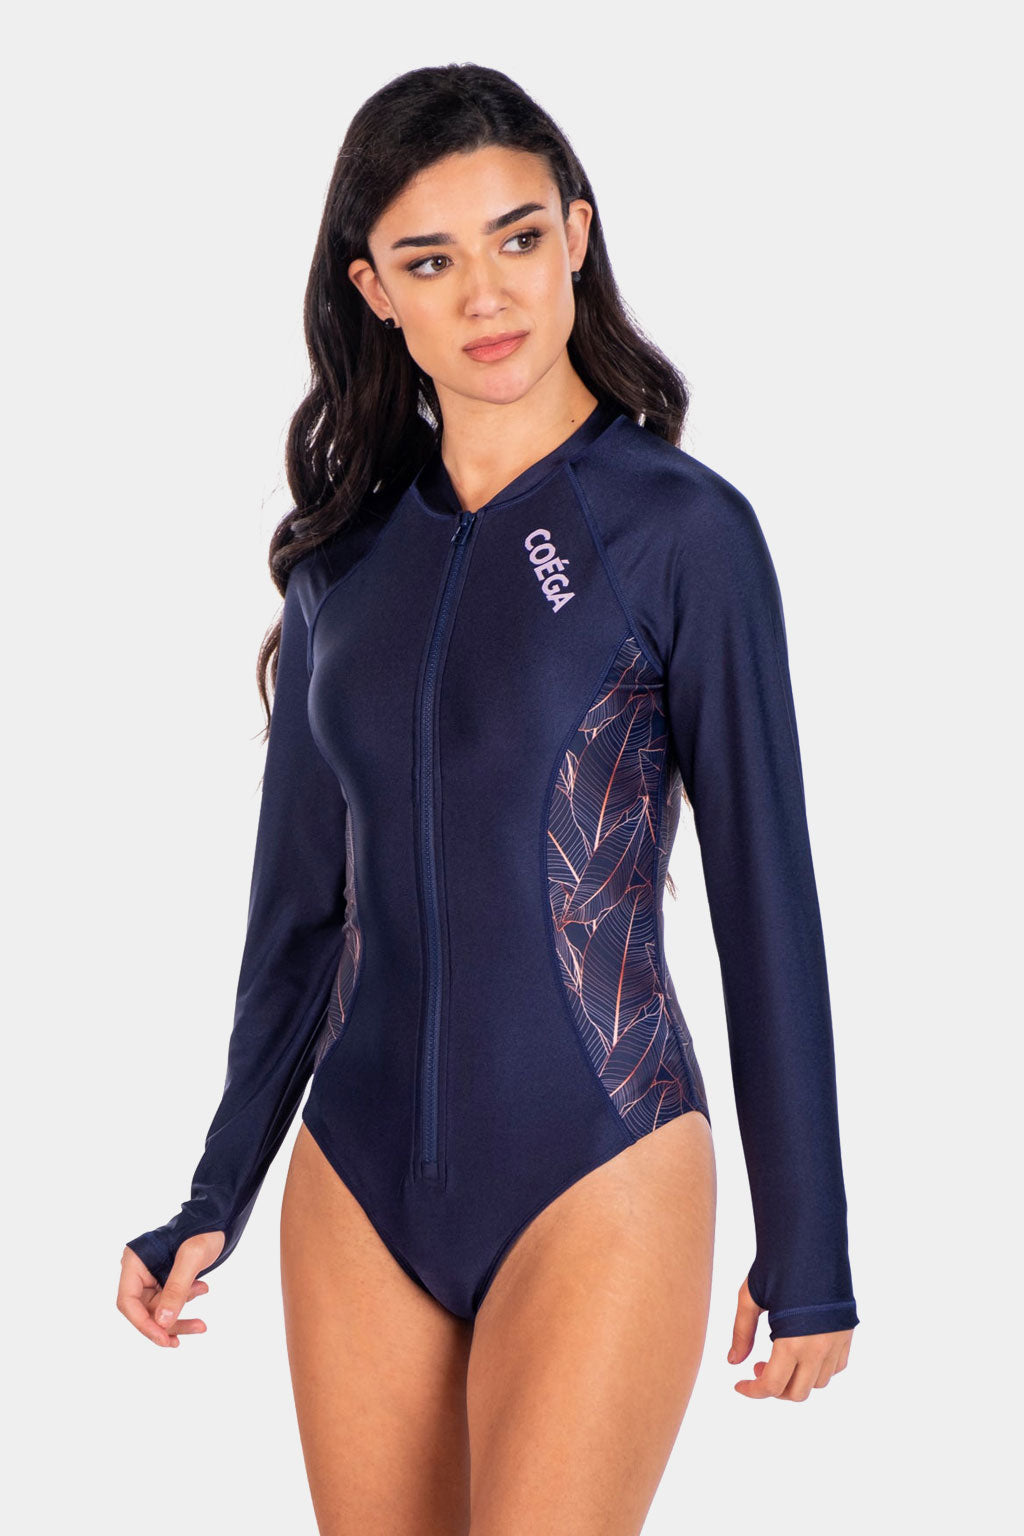 Coega - Ladies Surf Swim Suit